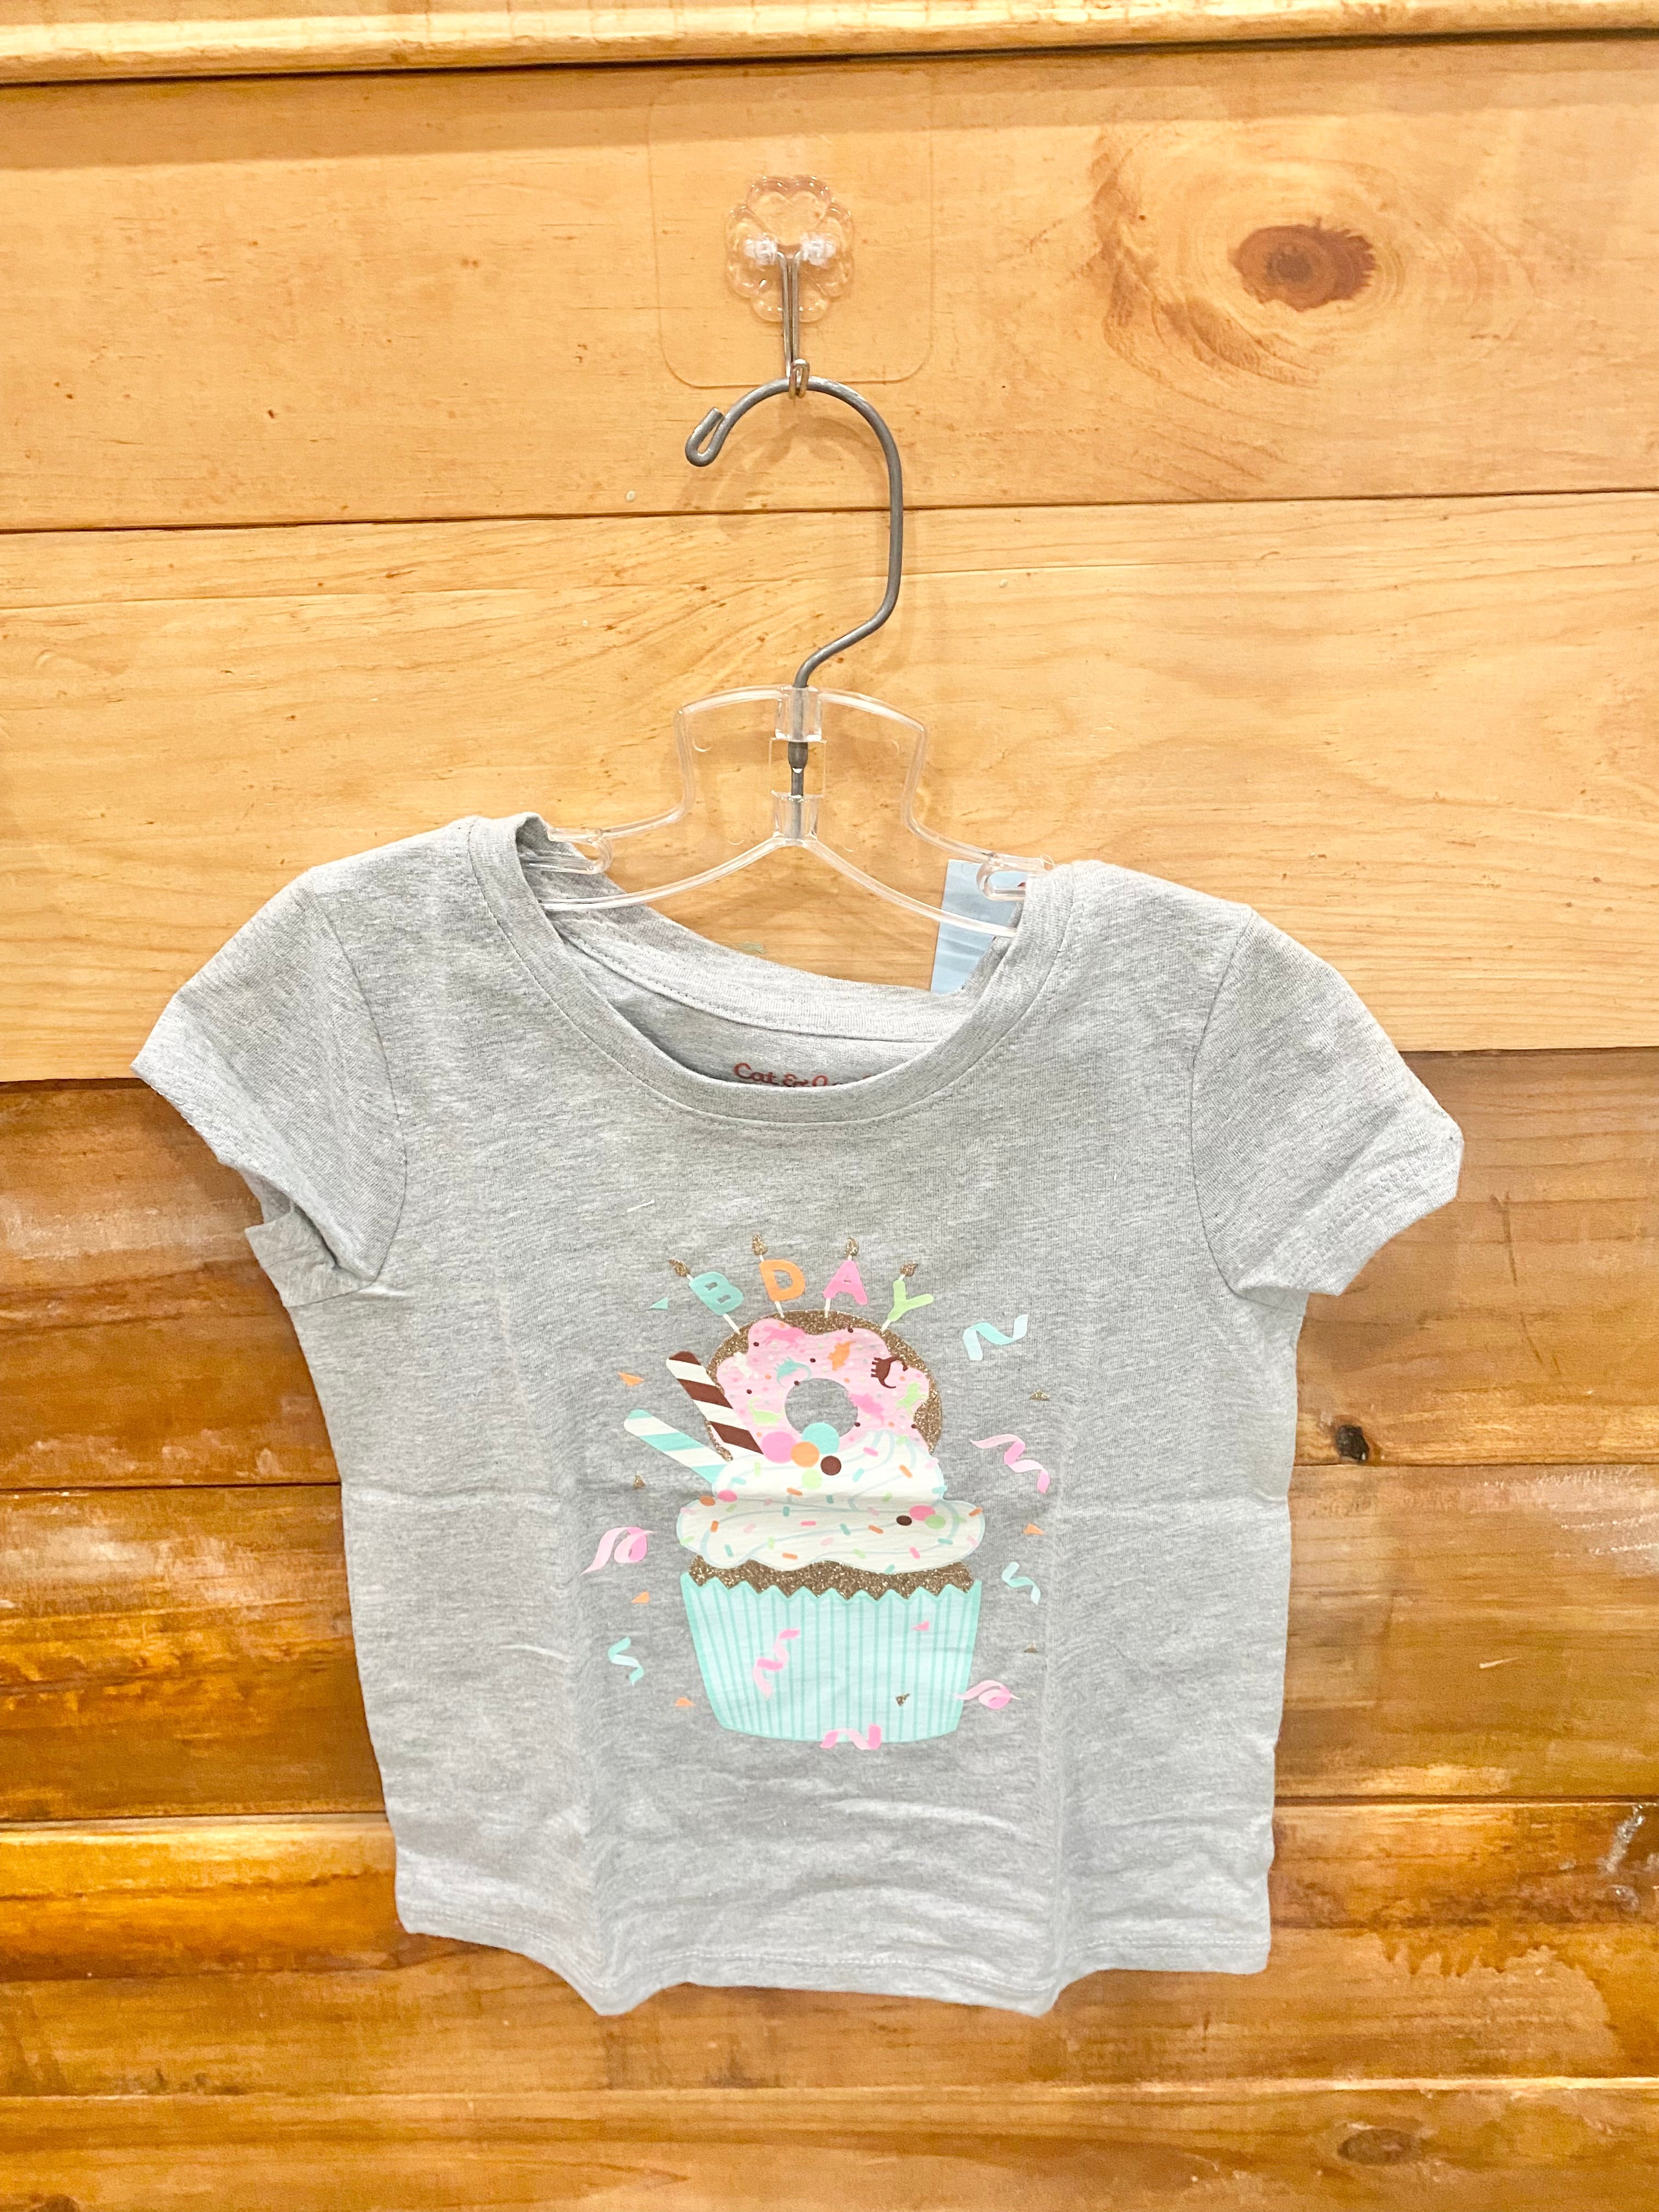 Gymboree Pink Striped Shirt Size 3T – Three Little Peas Children's